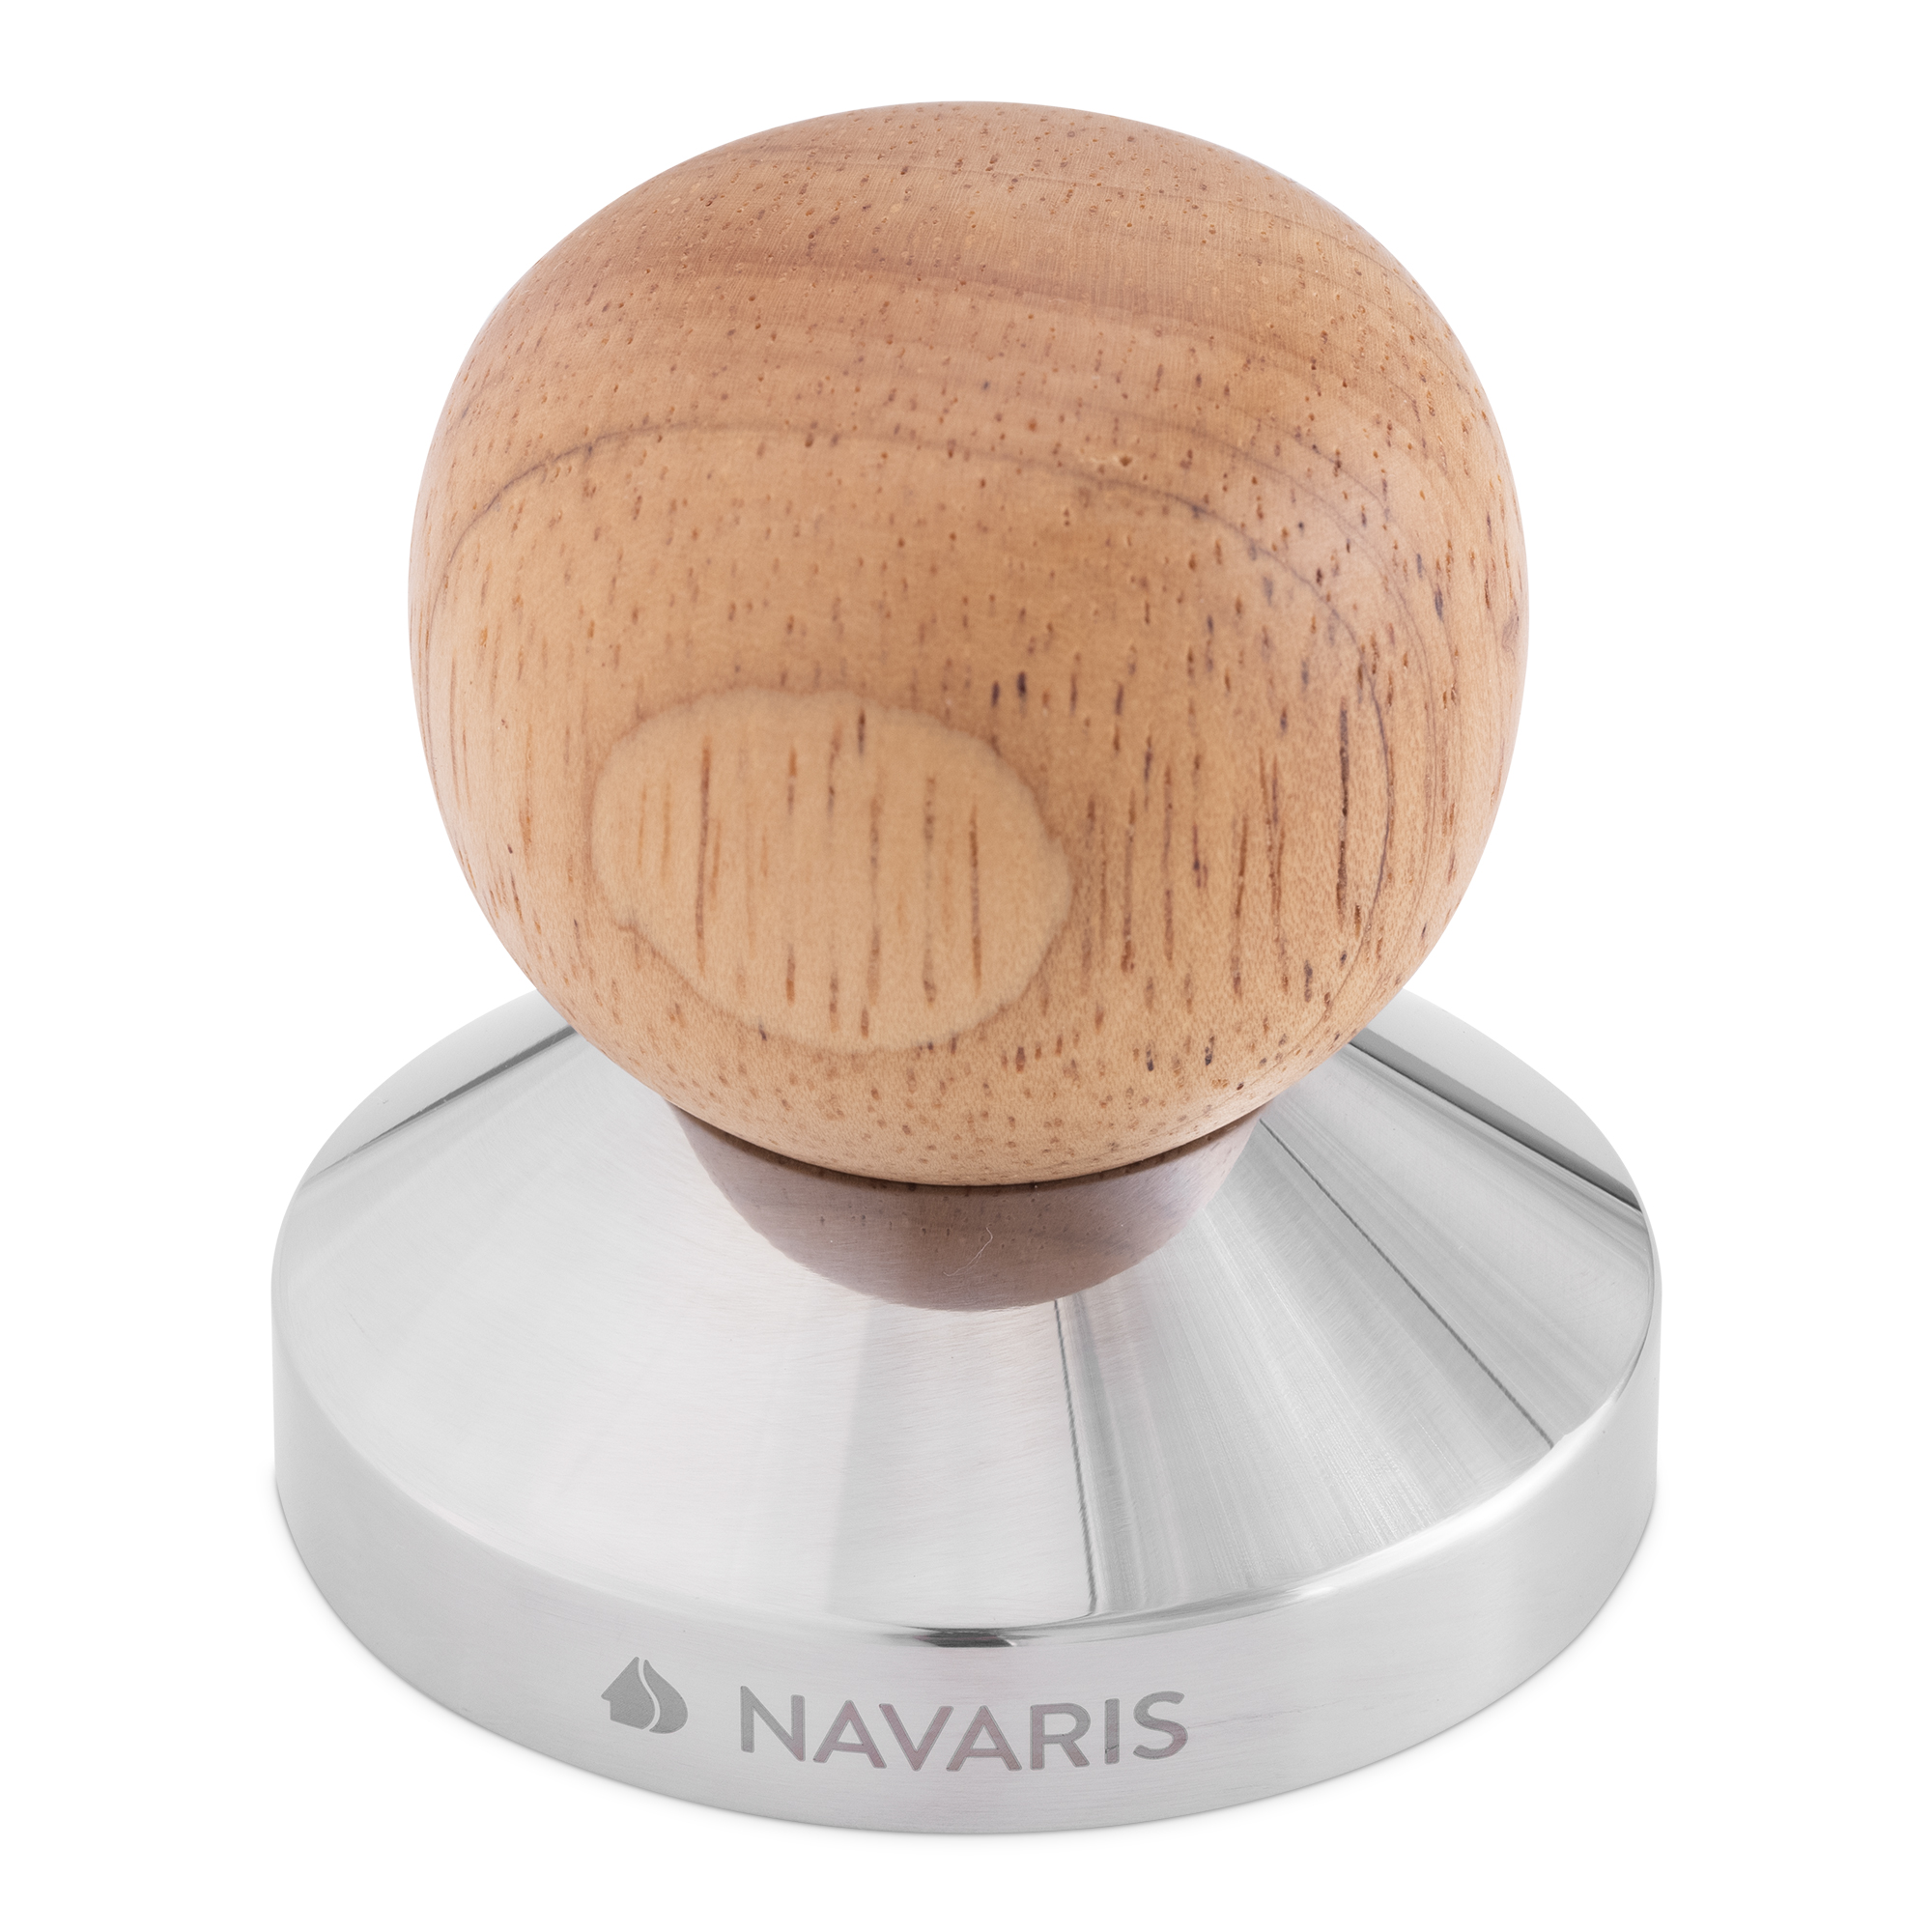 Navaris Espresso Tamper für Kaffee 51mm 